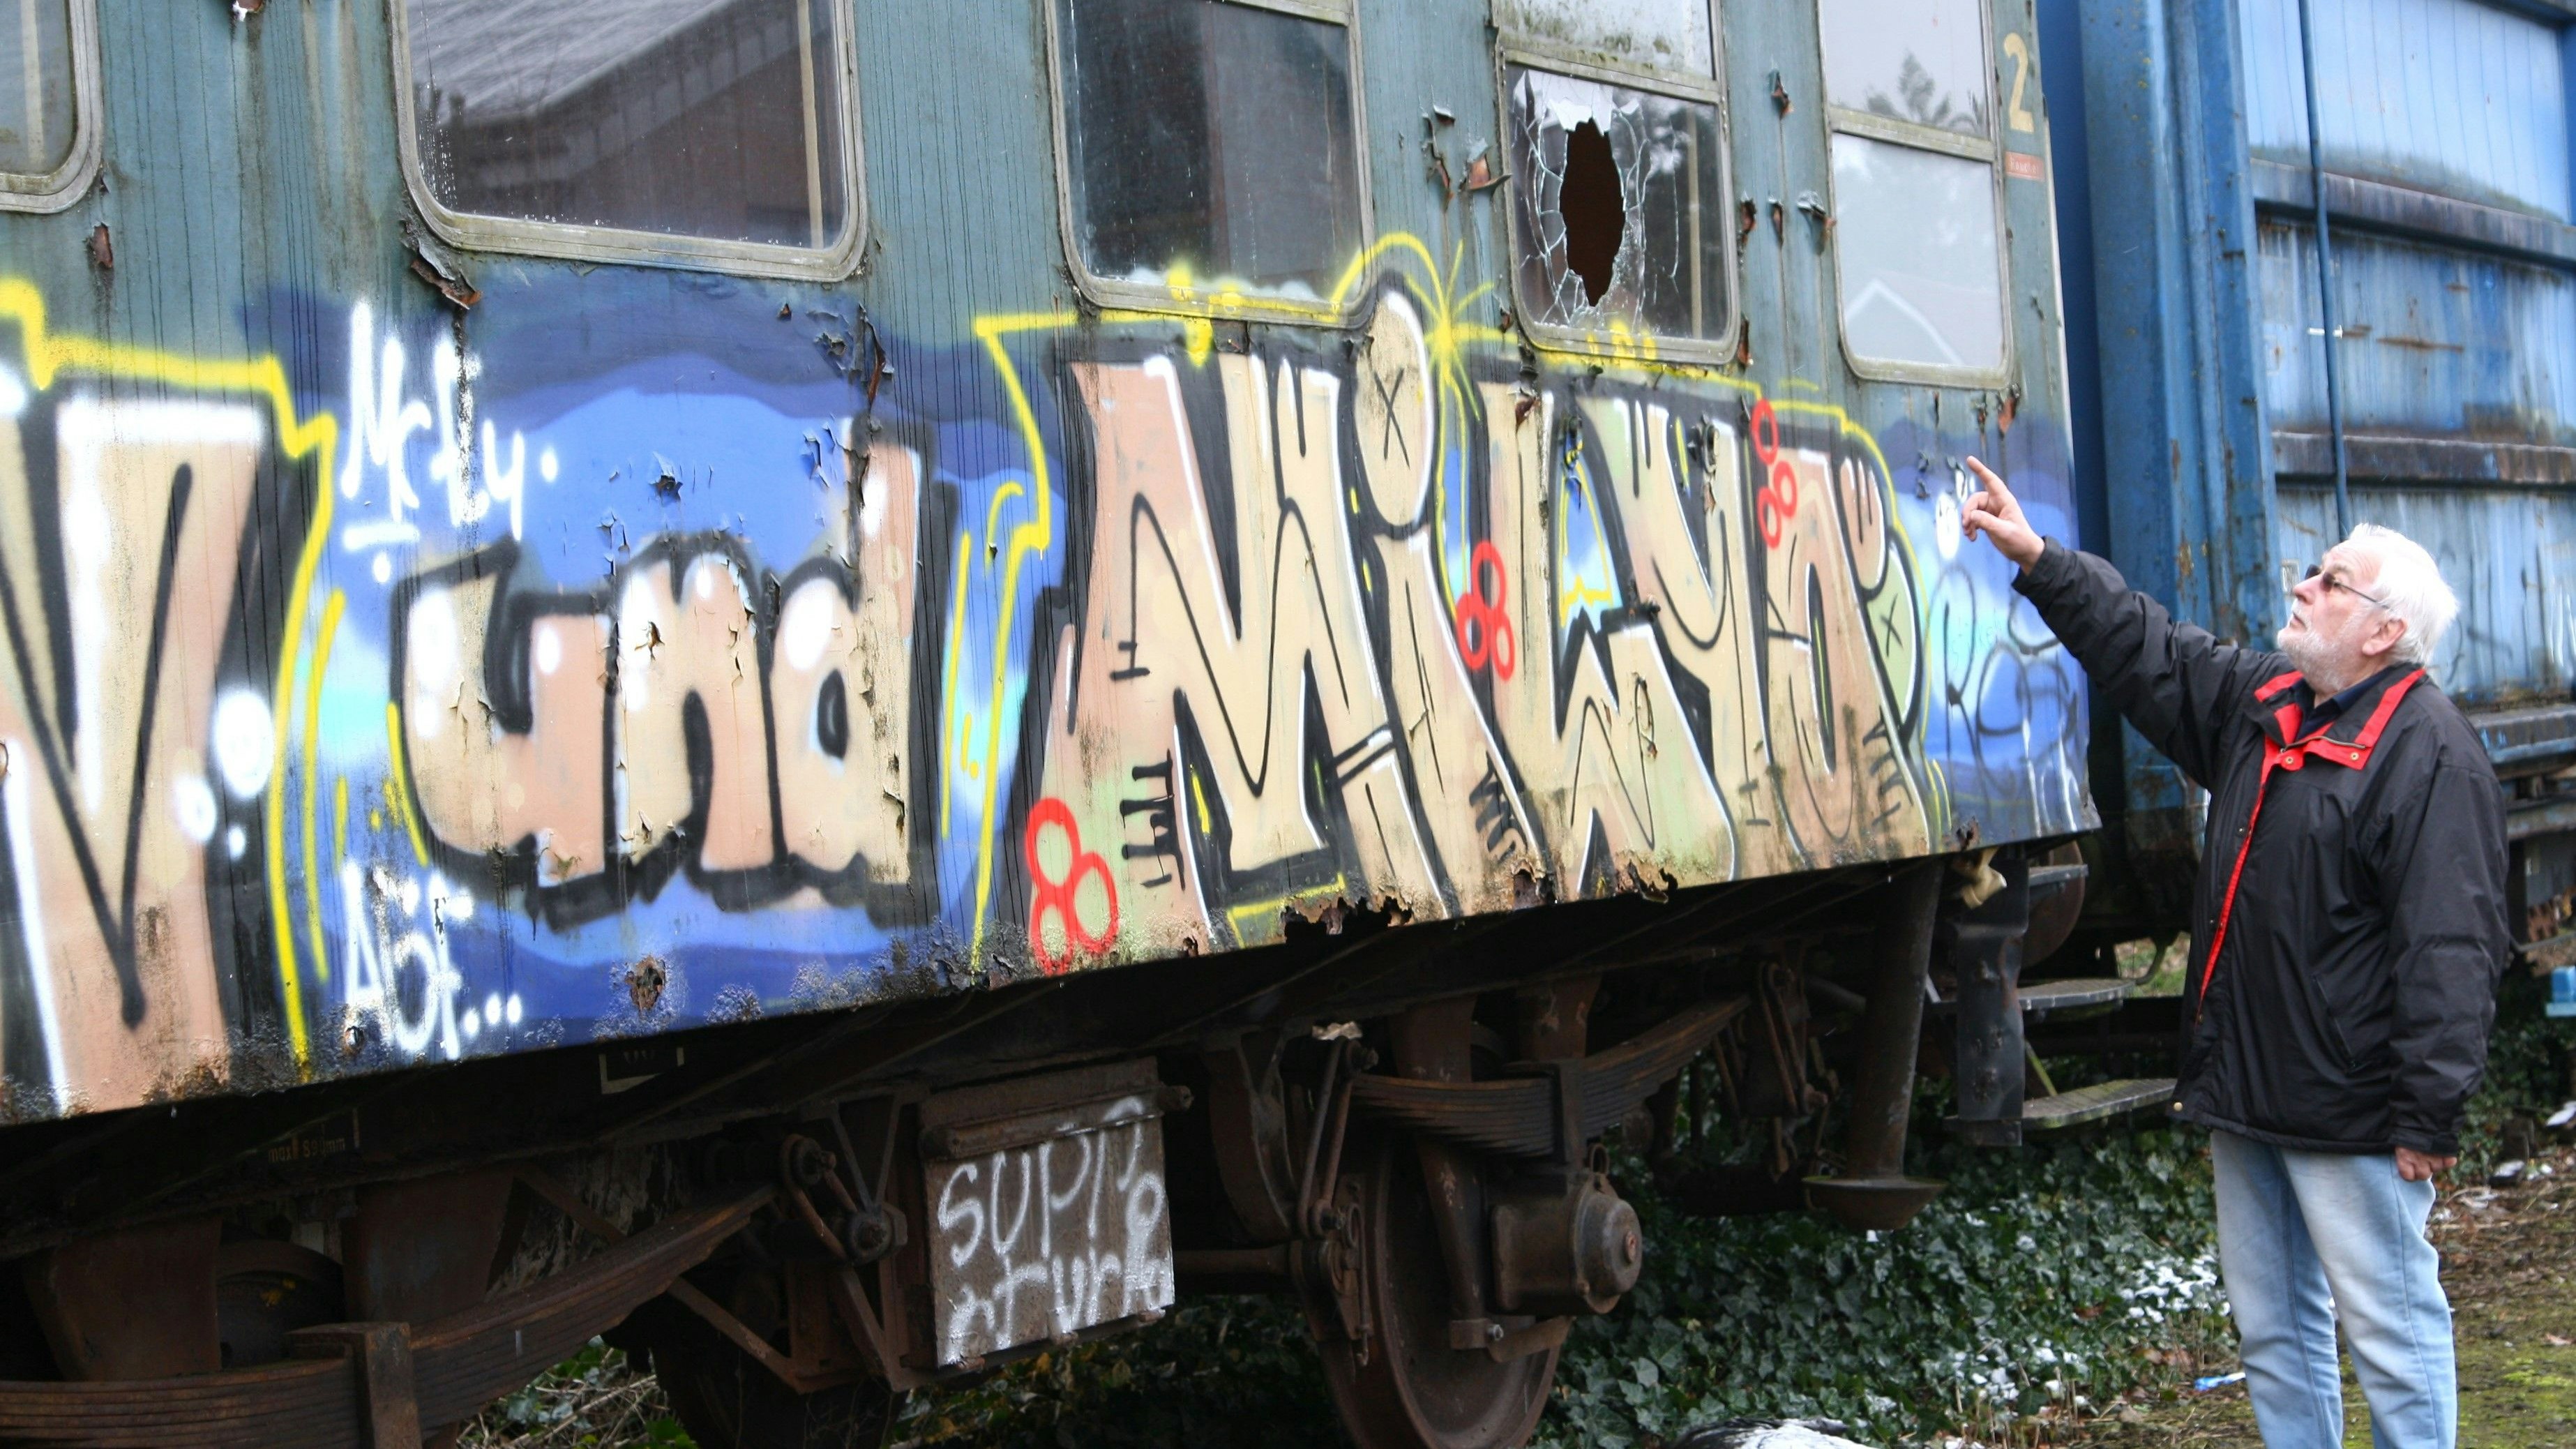 Ein fassungsloser Vorsitzender: Karl-Heinz Scholz zeigt auf die Graffitis und zertrümmerte Fenster im und am Wagon von 1923, der im Inneren jetzt vollkommen demoliert wurde. Foto: Pille